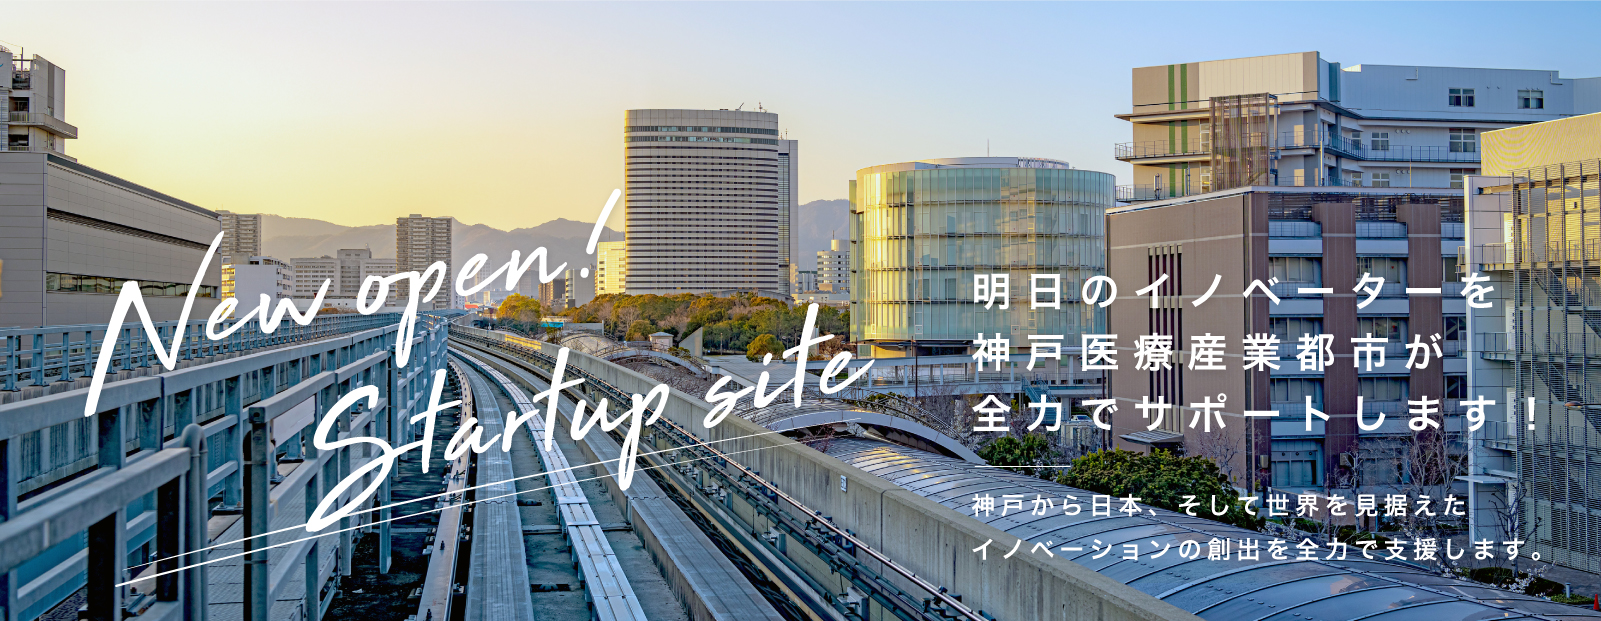 神戸医療産業都市 START UP